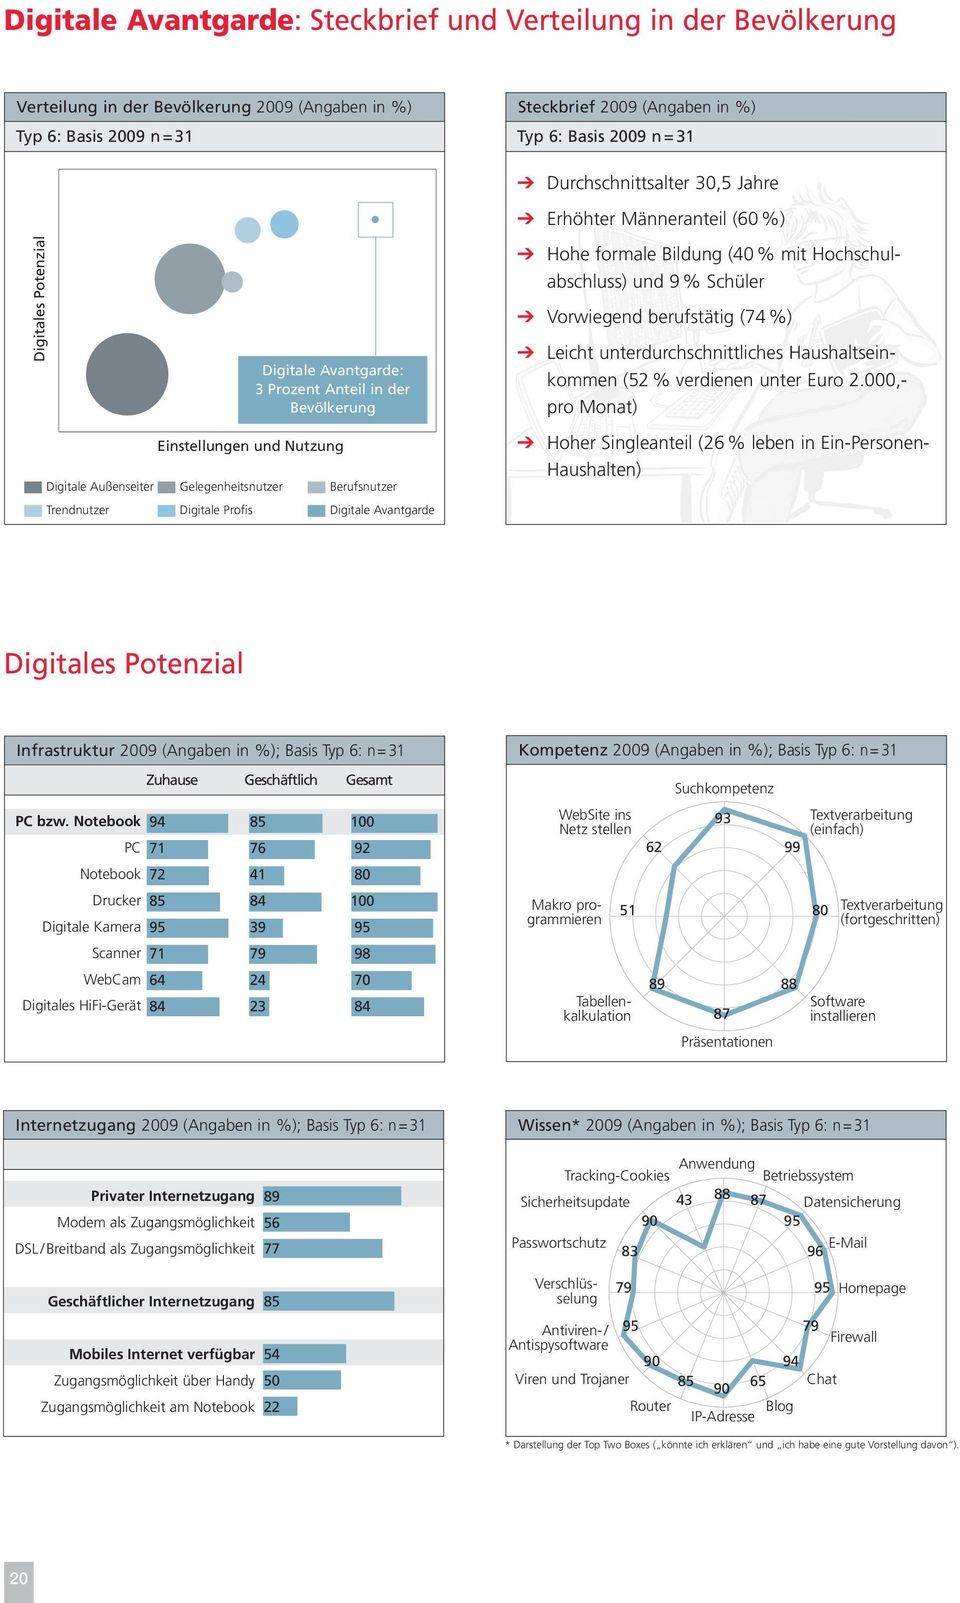 Trendnutzer Digitale Profis Digitale Avantgarde b Hohe formale Bildung (40 % mit Hochschulabschluss) und 9 % Schüler b Vorwiegend berufstätig (74 %) b Leicht unterdurchschnittliches